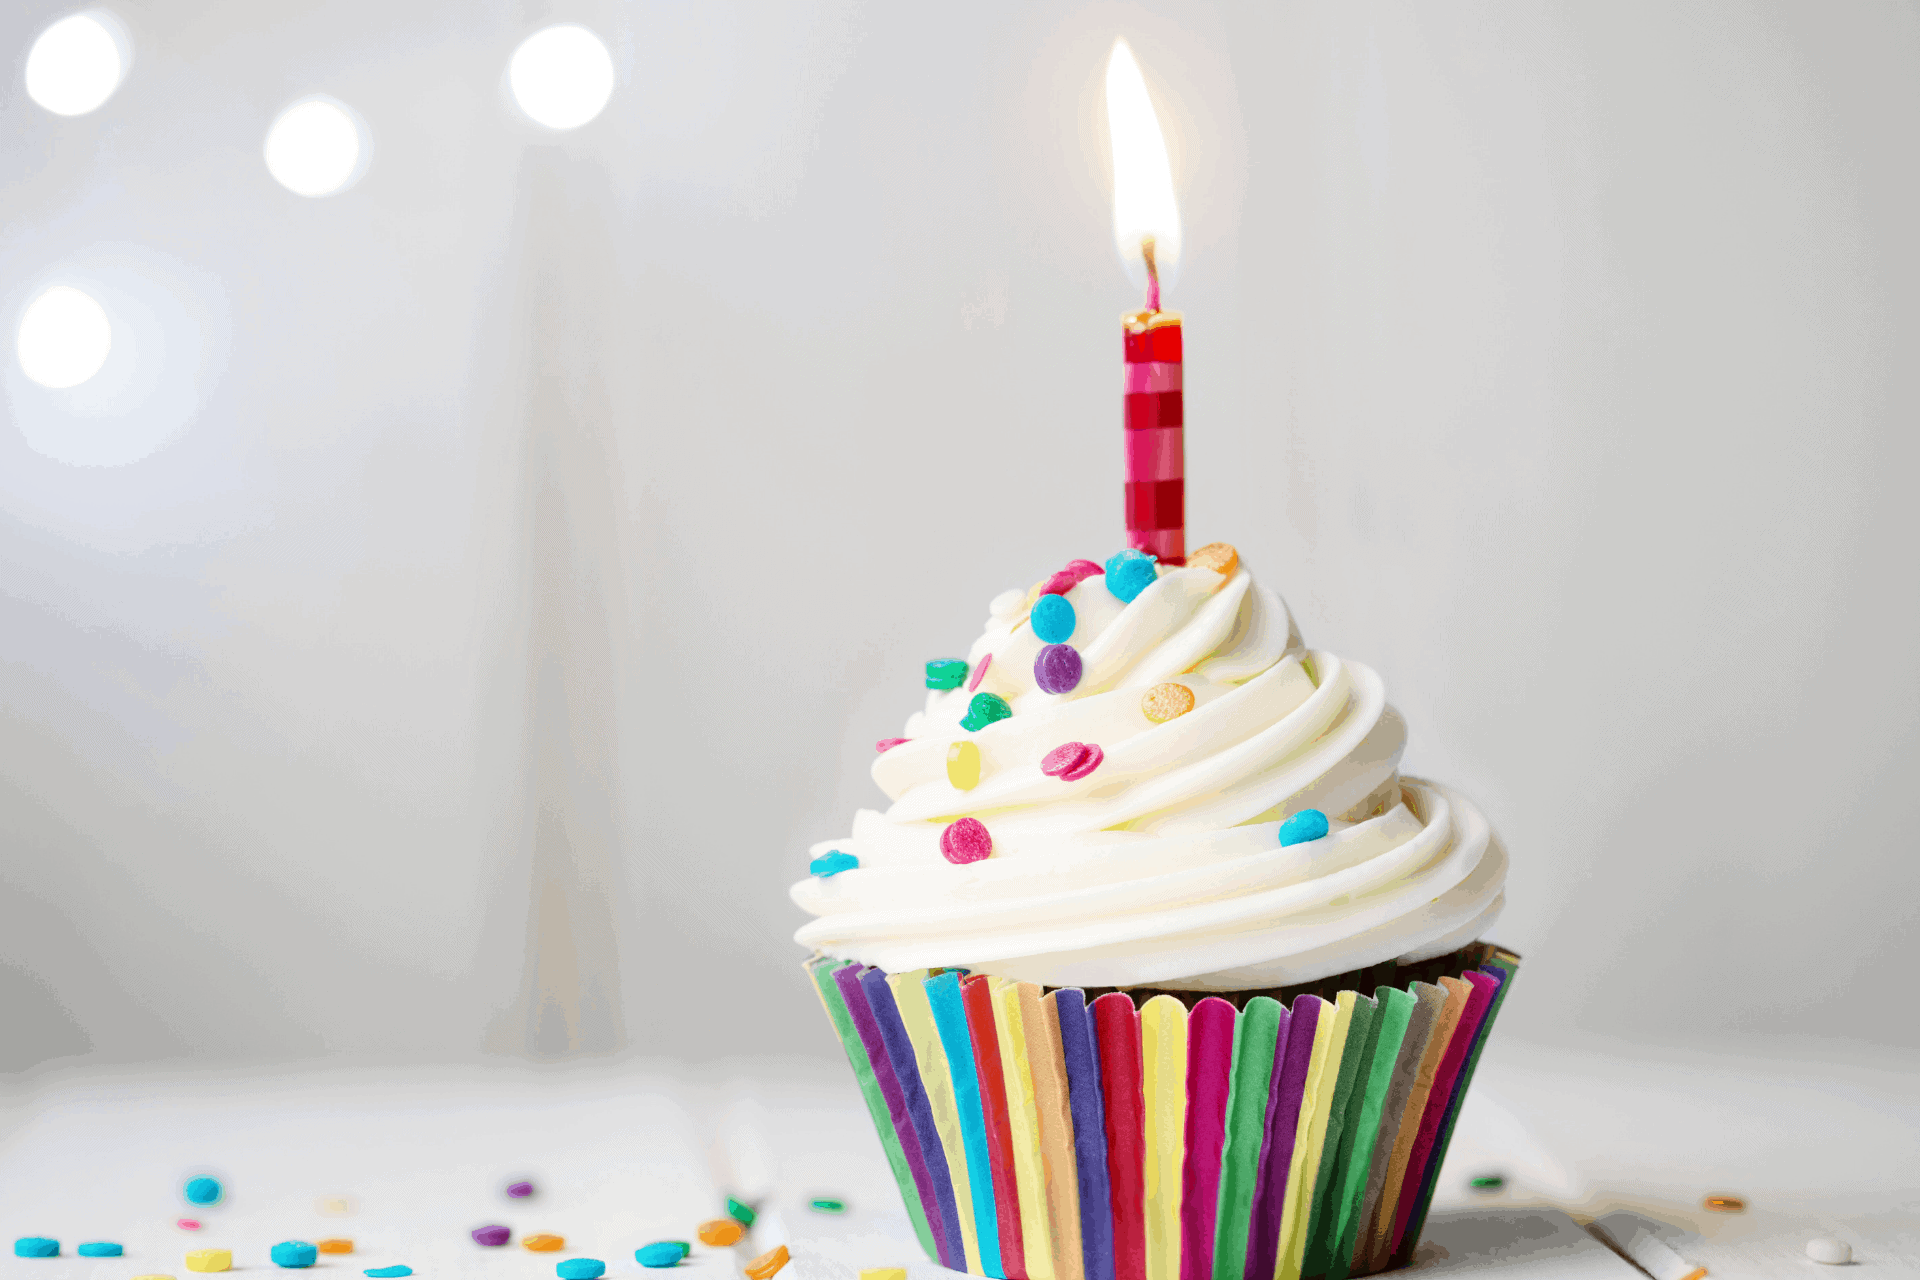 С днем рождения оригинально своими словами. С днем рождения. Кусок торта со свечкой. Кекс со свечкой. Кексик со свечкой.